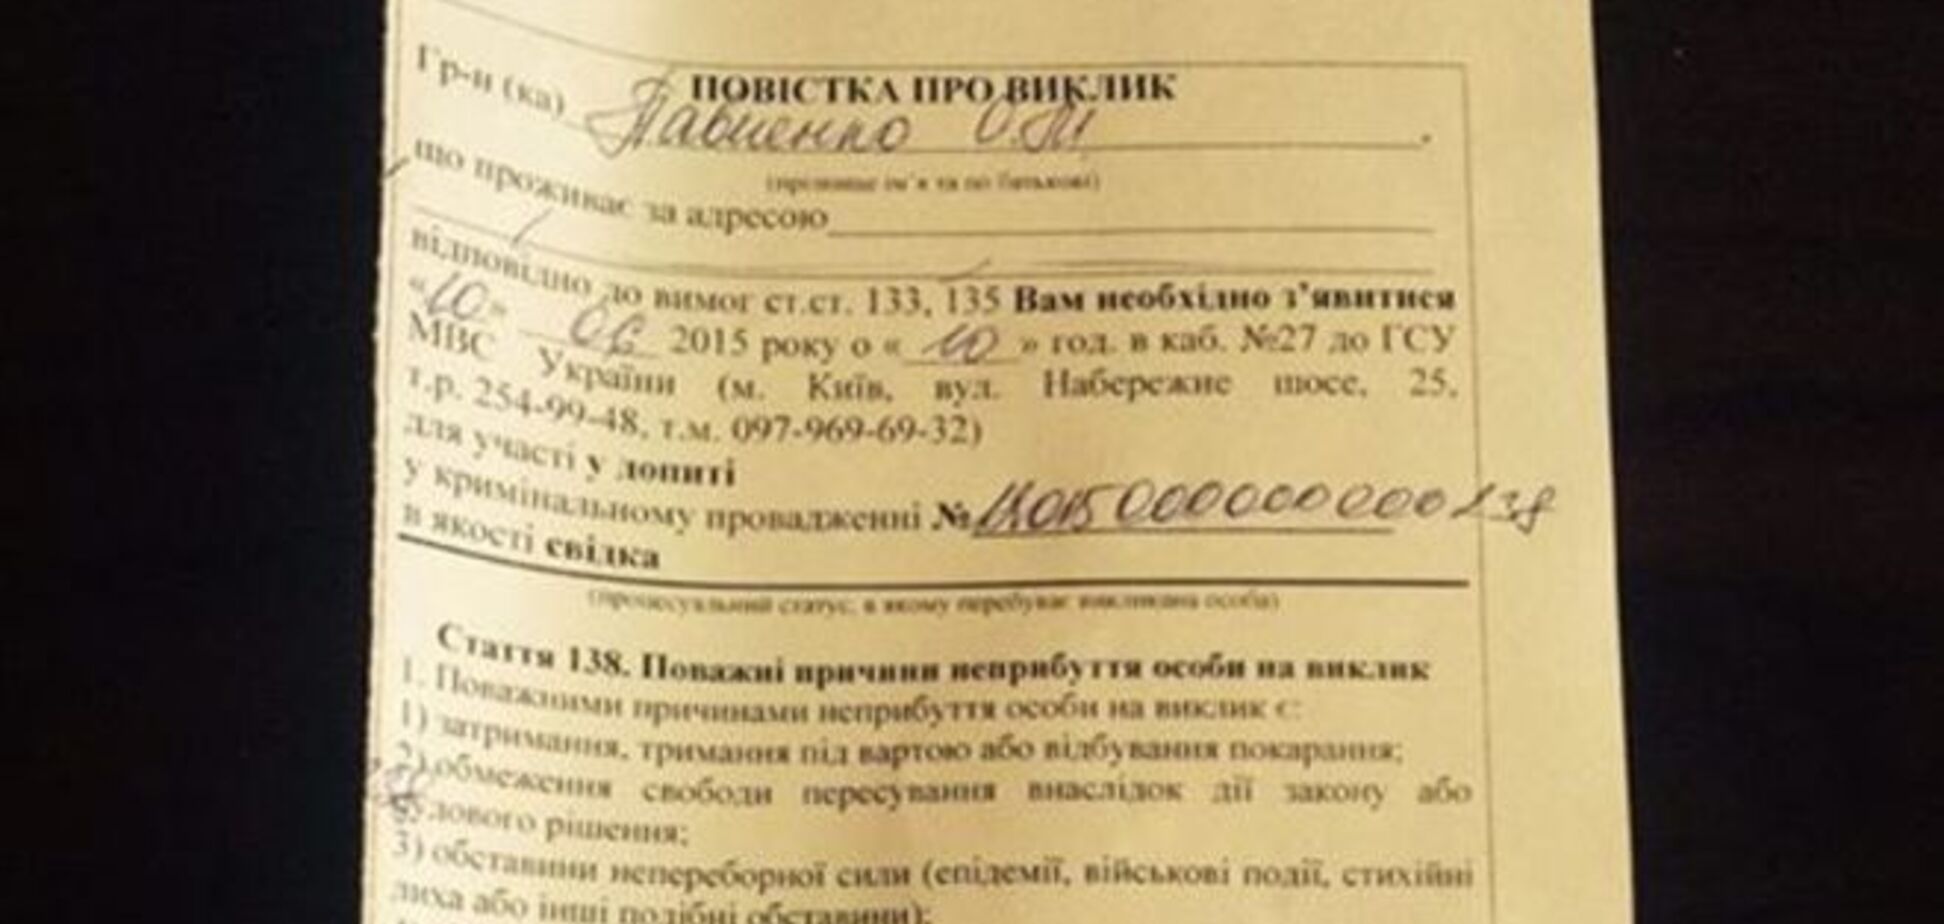 МВД вызвало на допрос министра аграрной политики Павленко: фотофакт